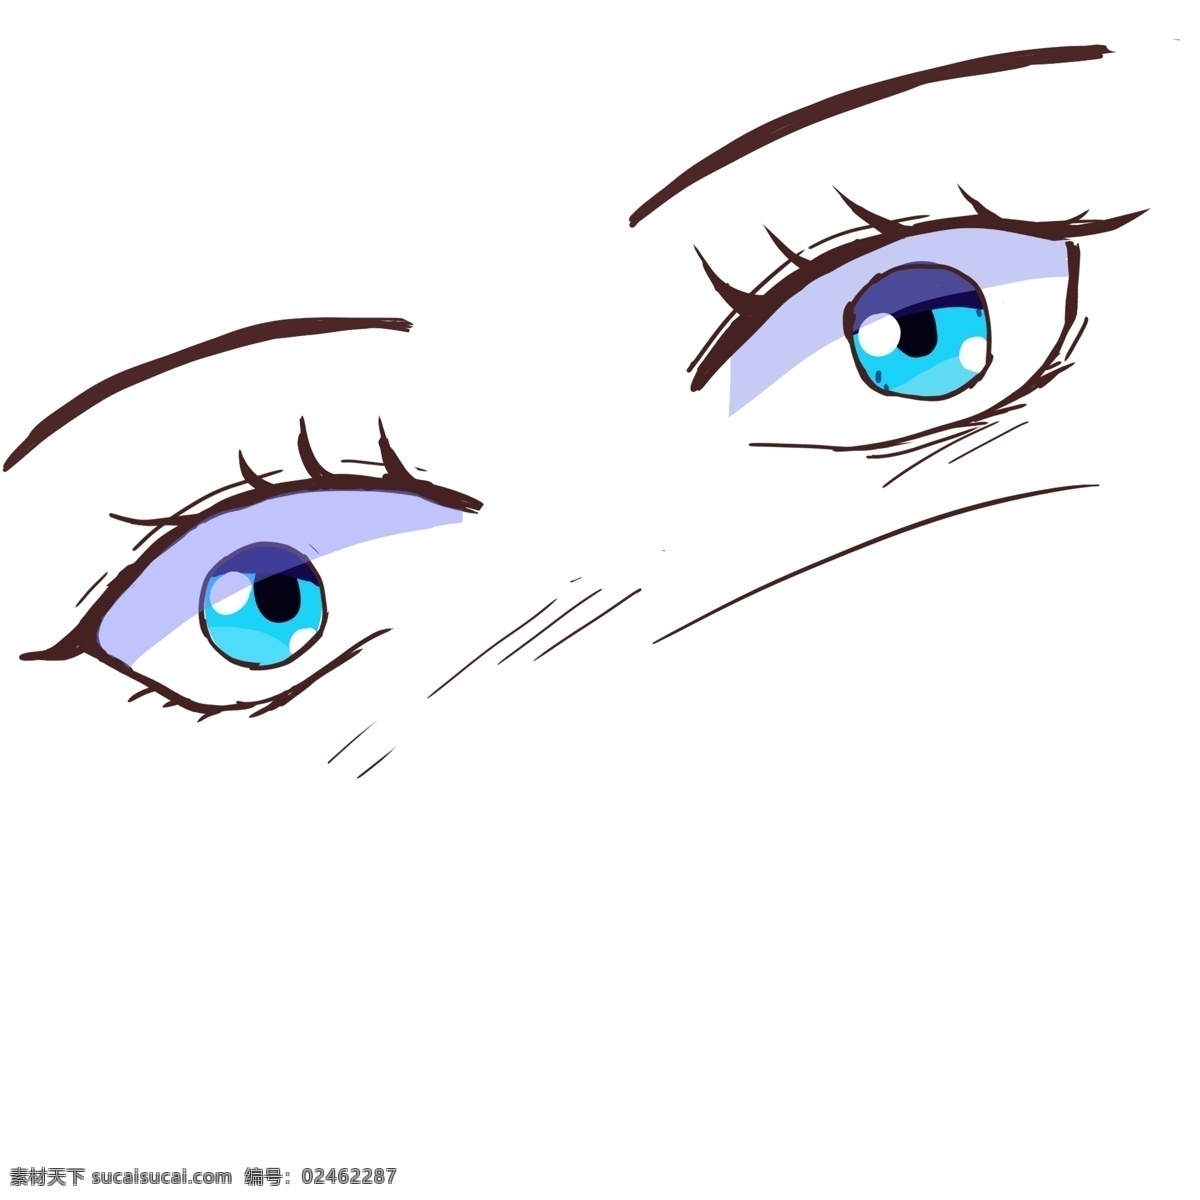 蓝色 动漫 版 大 眼睛 卡通眼睛 萌呆大眼睛 可爱眼睛 闪亮 人物五官 q版眼睛 动漫版眼睛